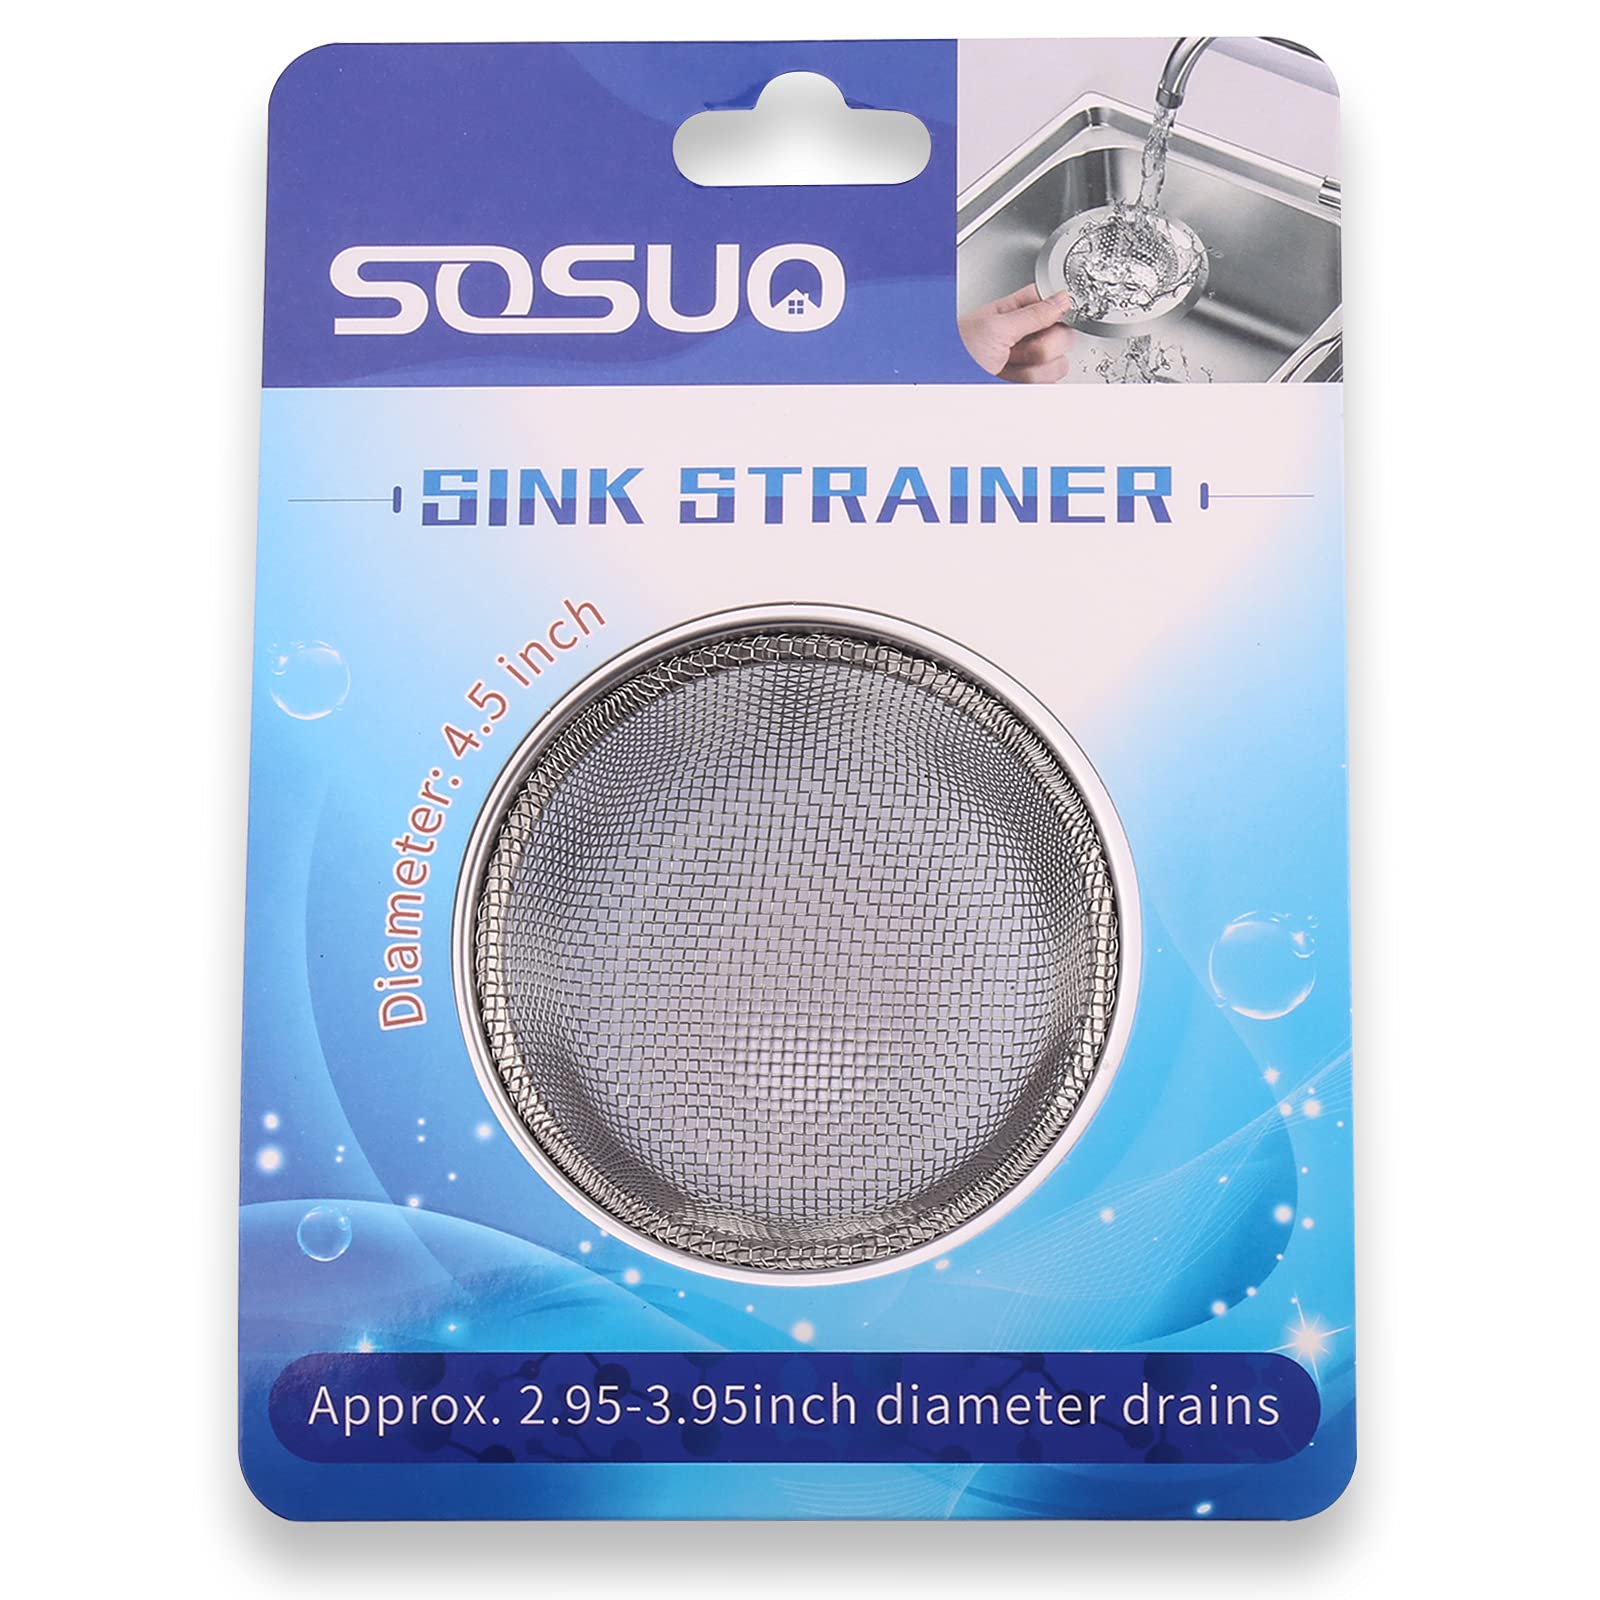 2Pcs Kitchen Sink Strainer, Stainless Steel Mesh Sink Drain Cover, Large Wide Rim 4.5" Diameter Sink Drain Strainer Basket Catcher